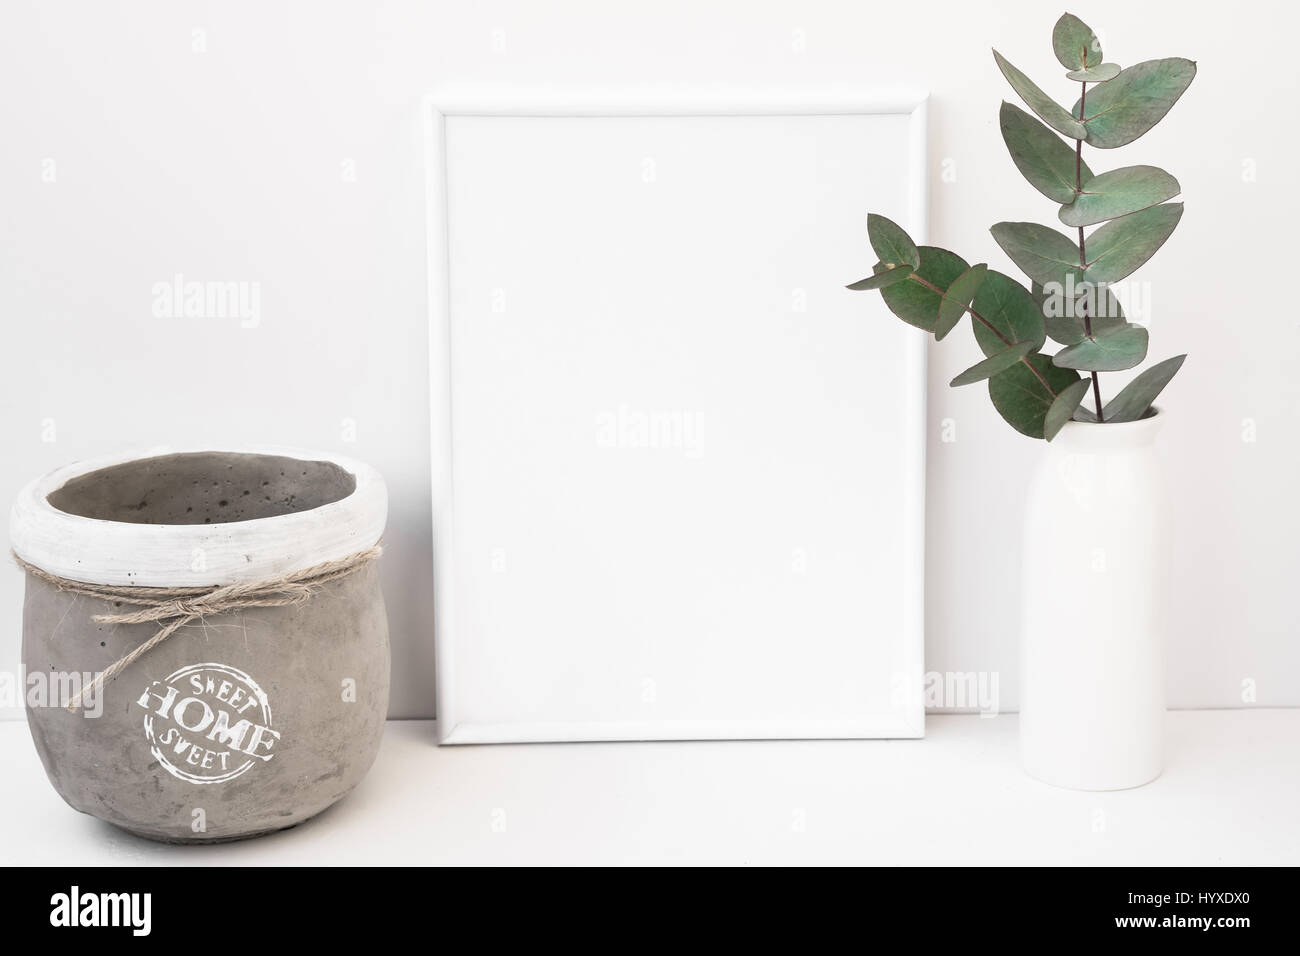 Weißer Hintergrund Rahmen Mockup, grüne Eukalyptus in Keramikvase, Zement Pot Stil Bild für soziale Medien, Produkt-Marketing, blogging Stockfoto